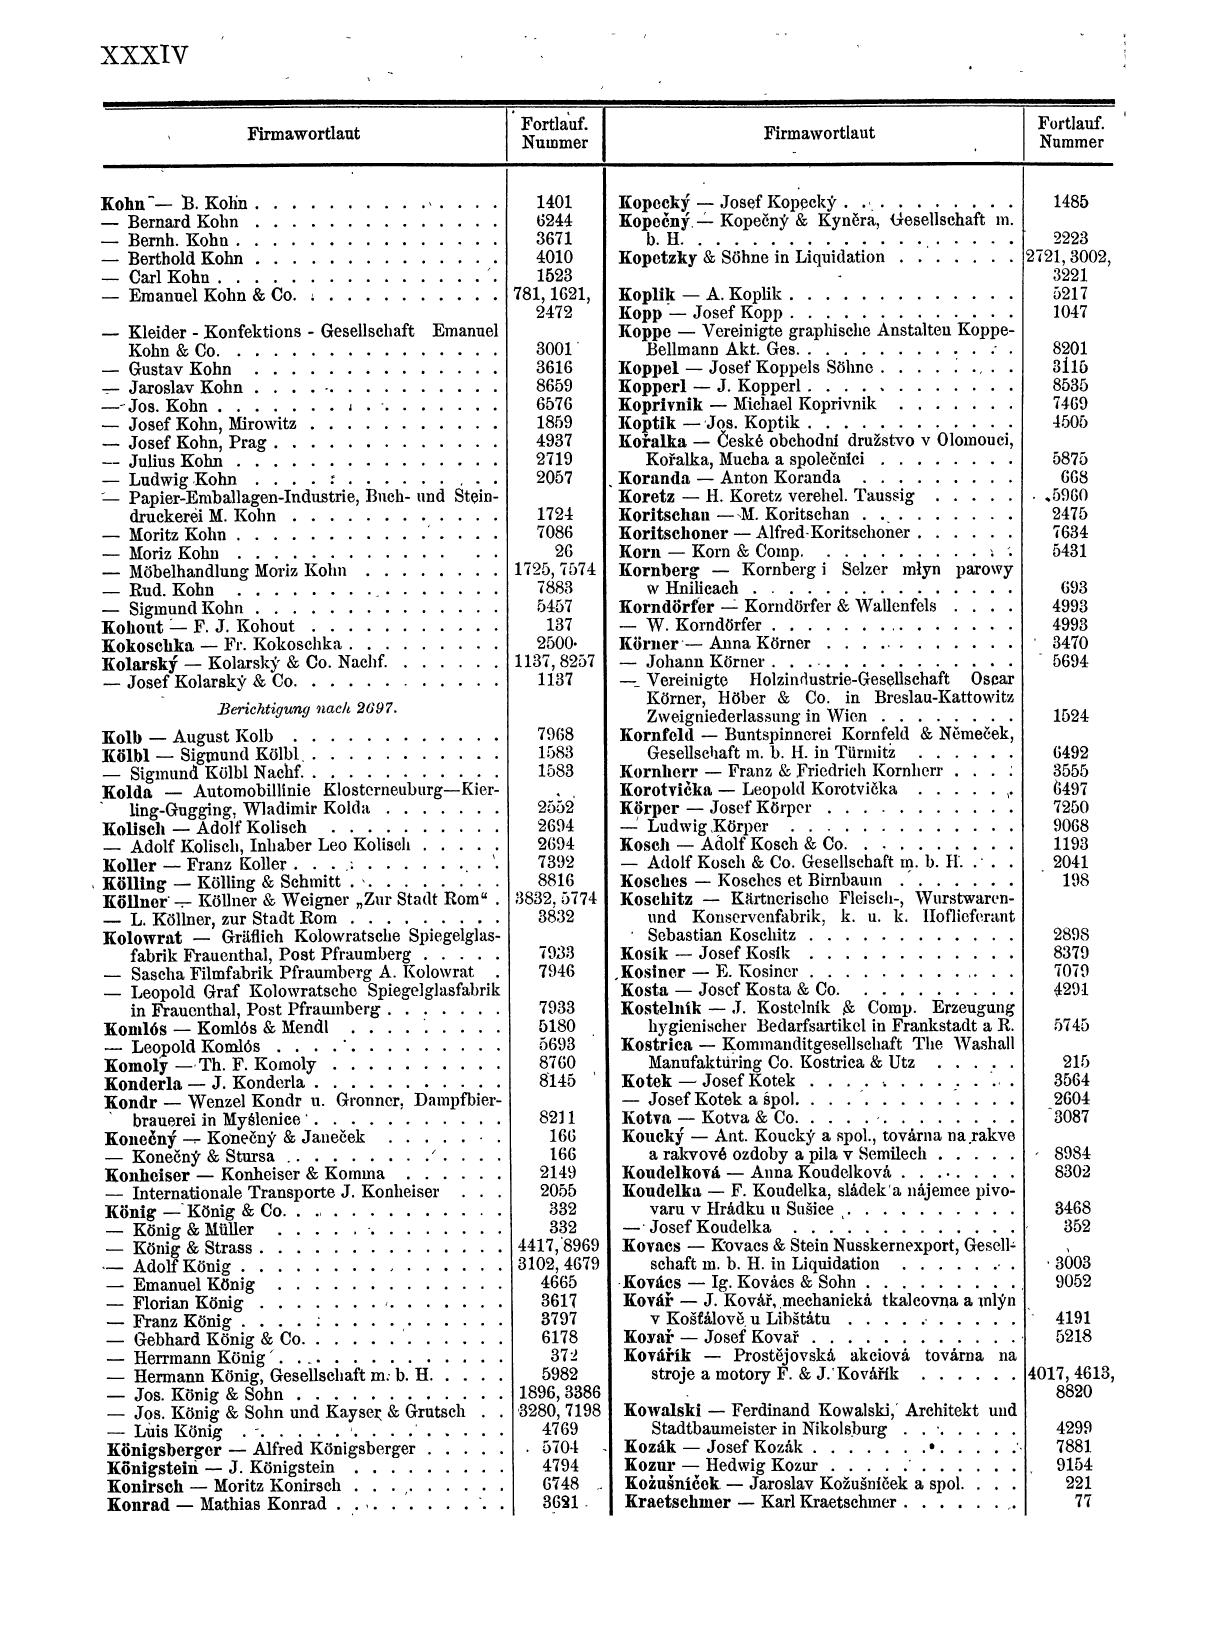 Zentralblatt für die Eintragungen in das Handelsregister 1913, Teil 1 - Seite 42